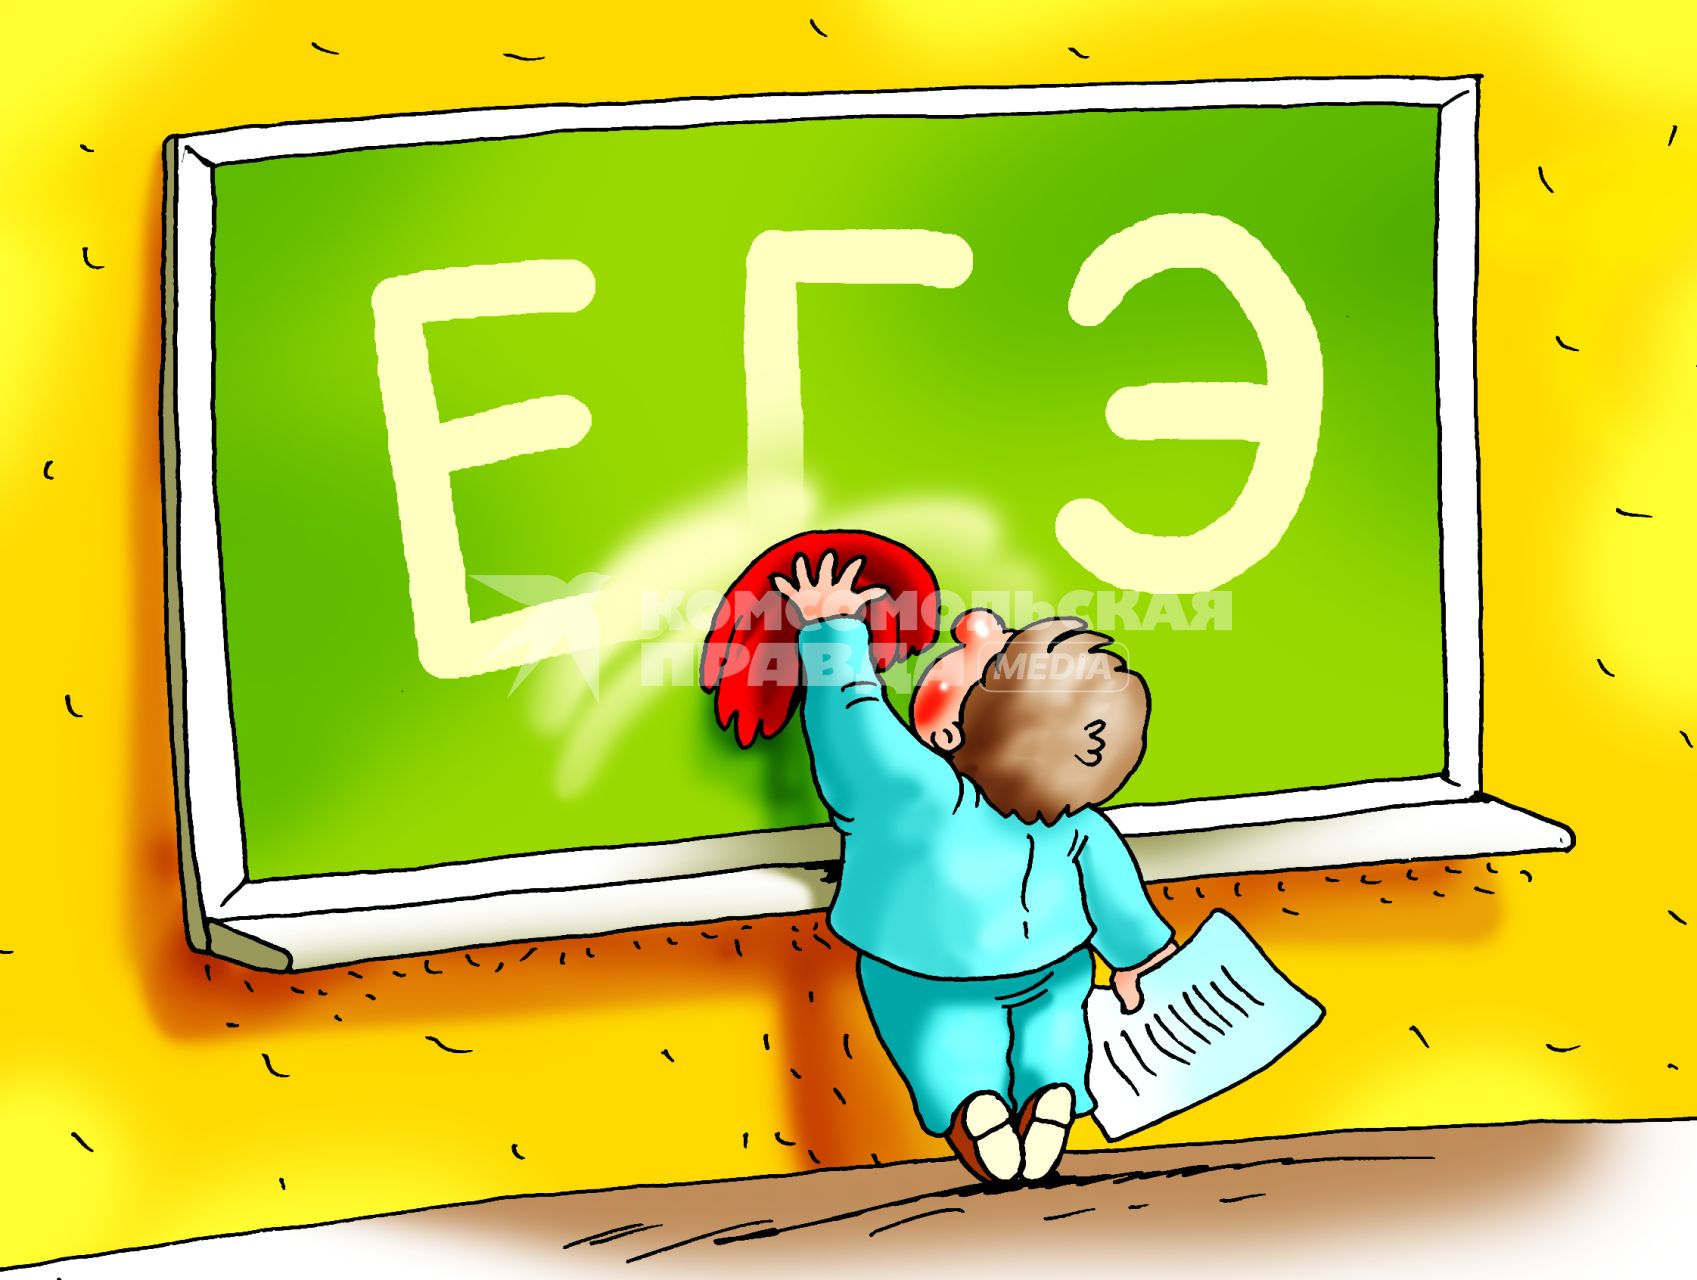 Карикатура на тему отмены ЕГЭ.